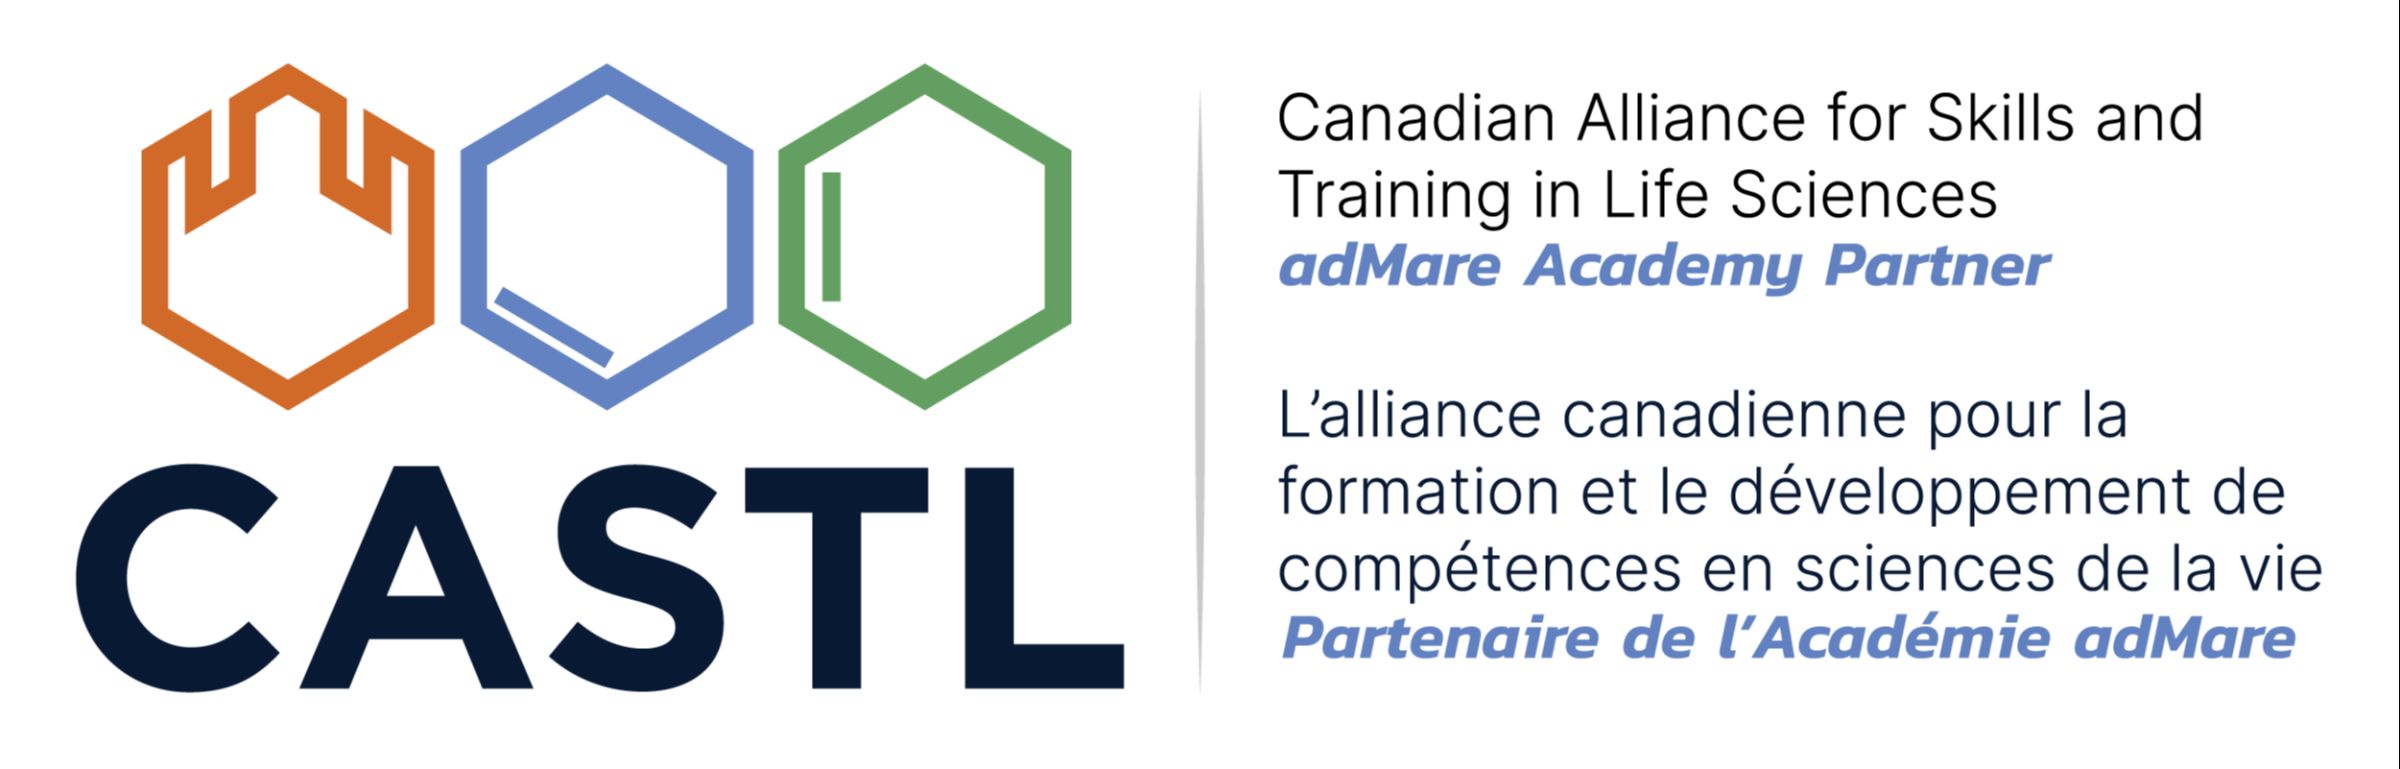 L’Alliance canadienne pour la formation et le développement de compétences en sciences de la vie (CASTL) publie le calendrier des cours de brève durée pour 2023